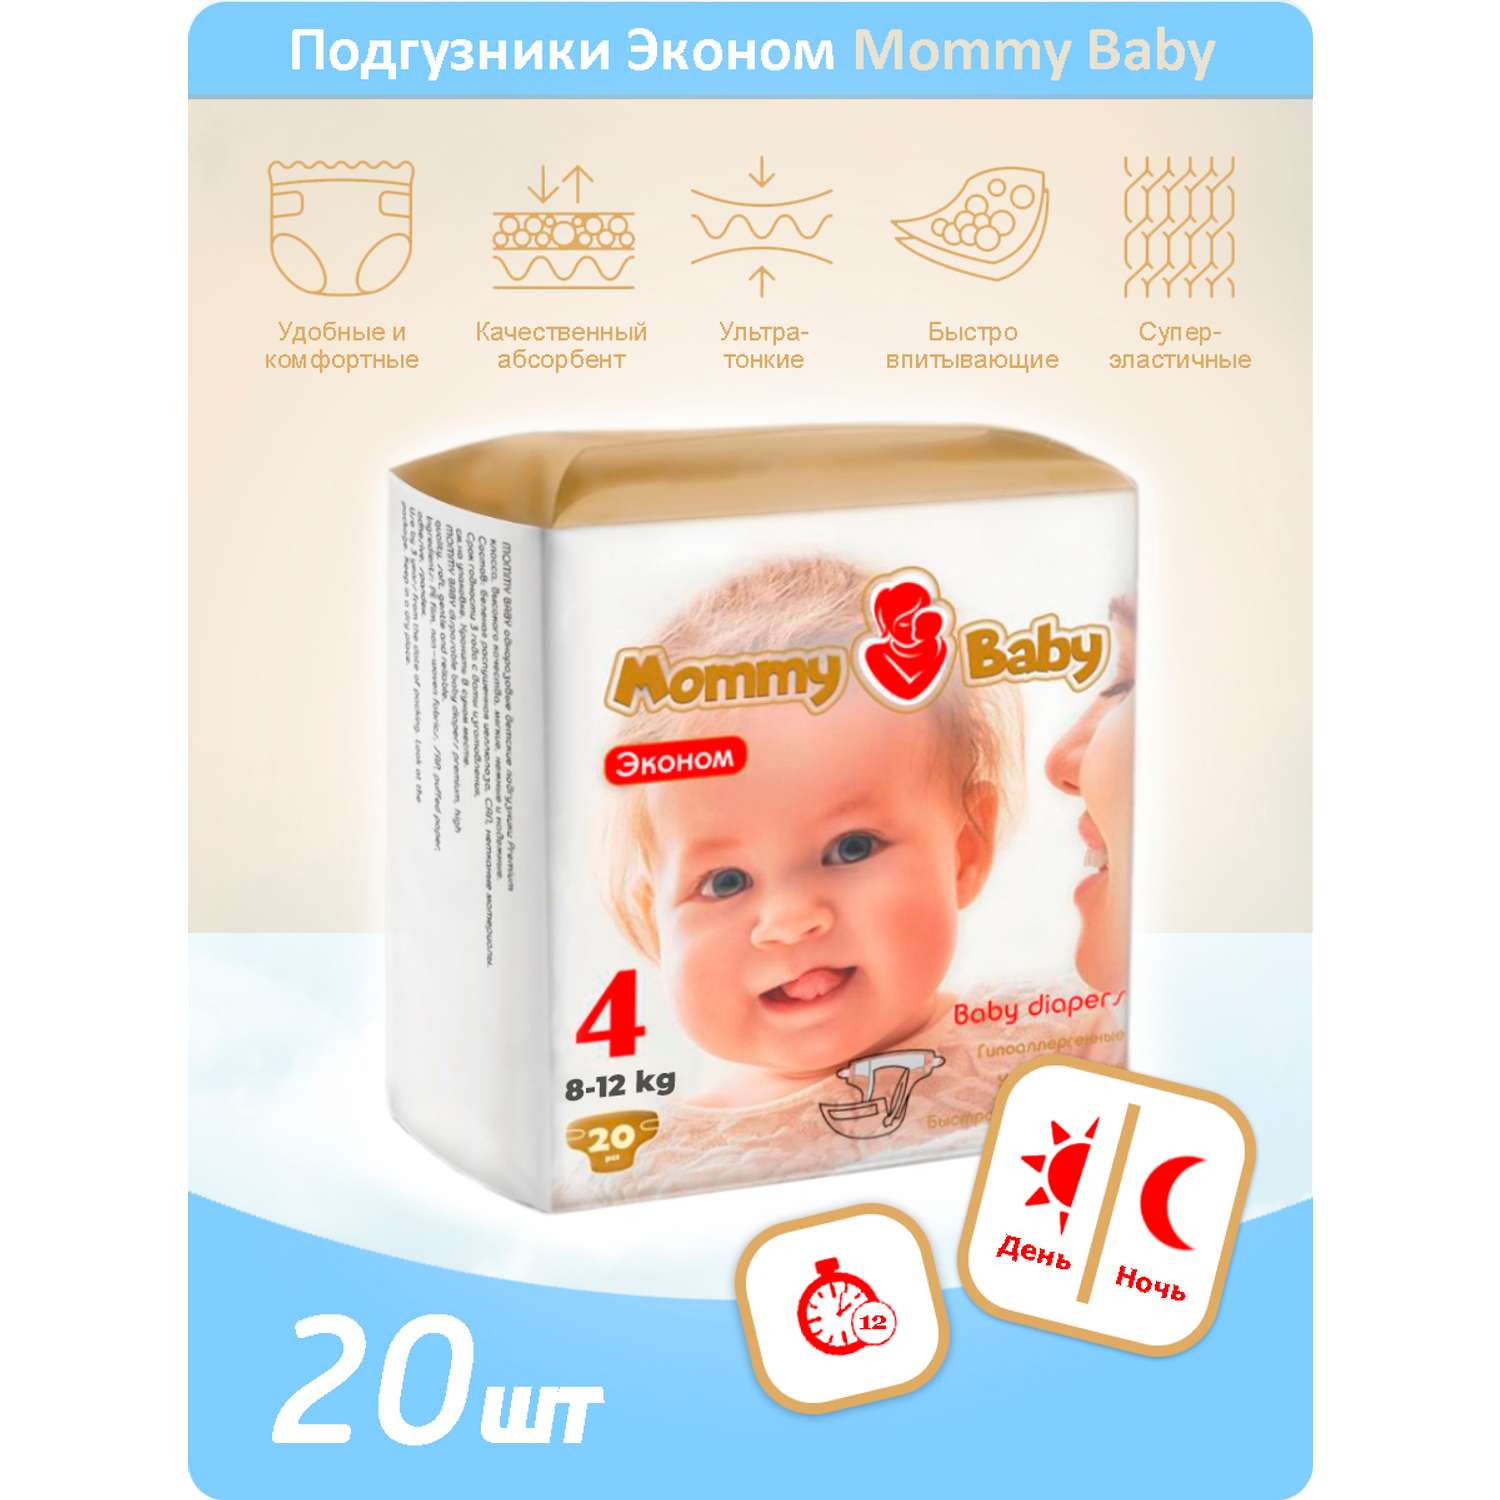 Подгузники Эконом Mommy Baby Размер 4. 20 штук в упаковке 8-12 кг - фото 1